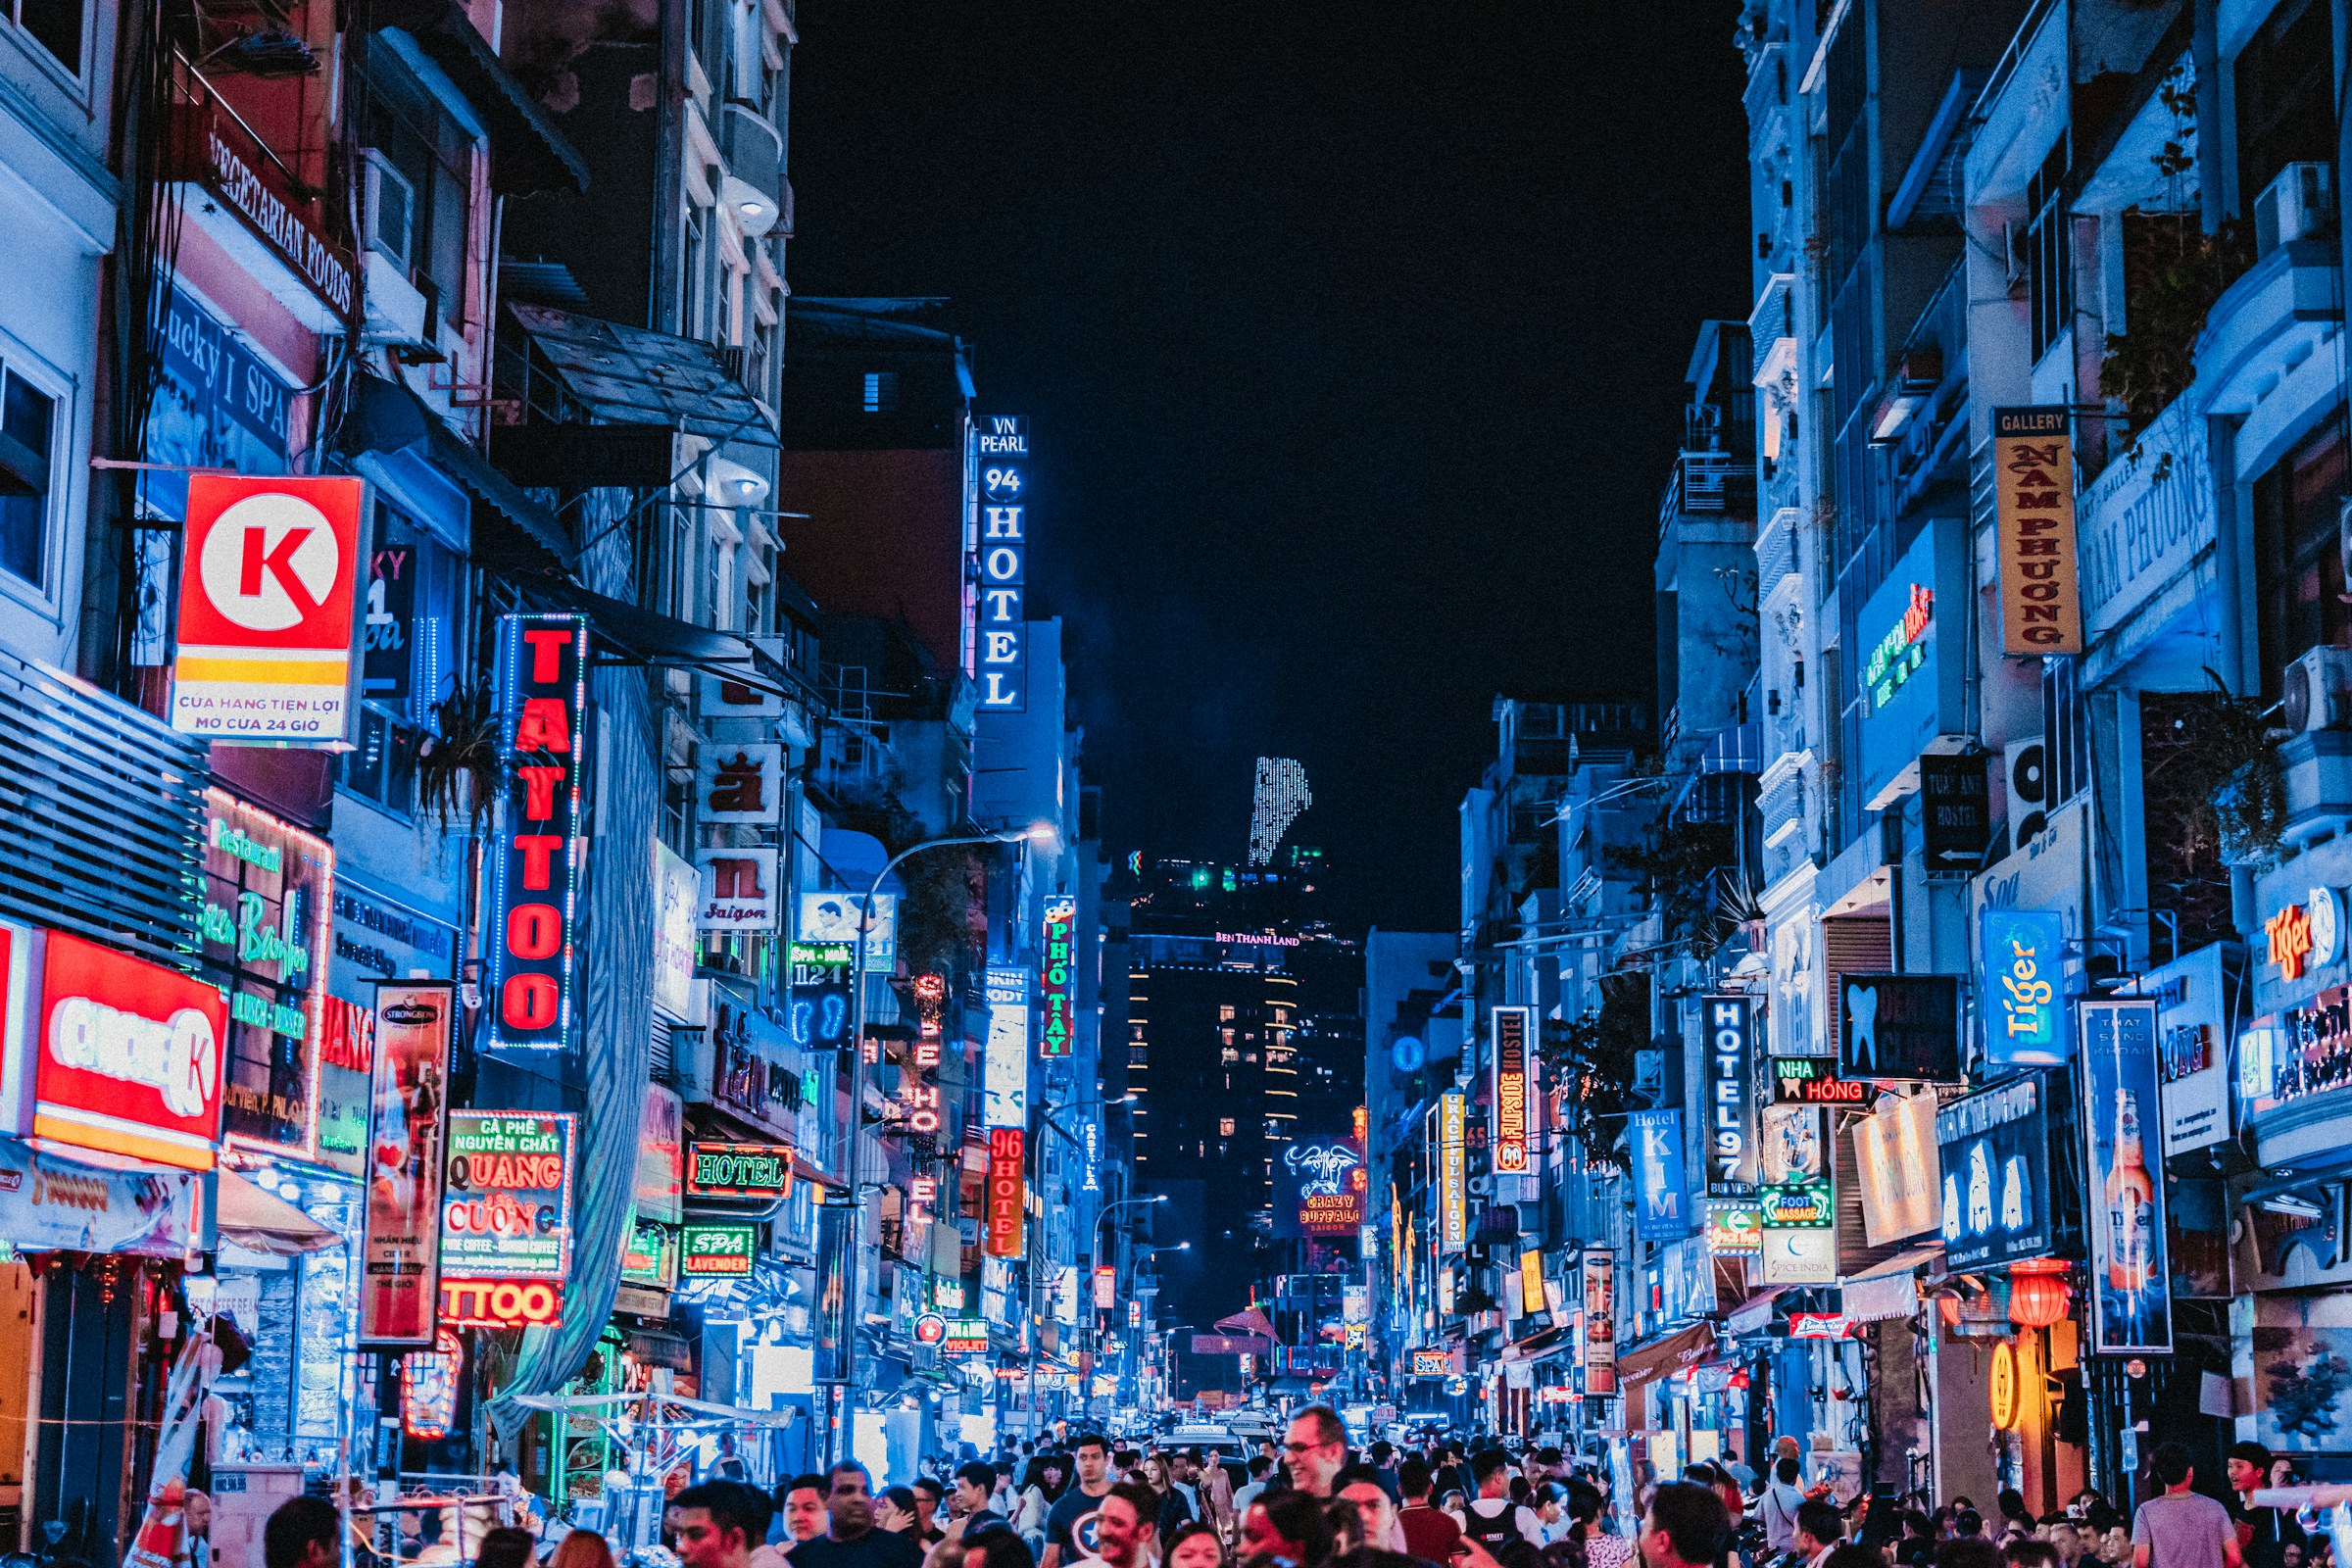 Livlig bygade om aftenen i Ho Chi Minh City med neonlys og skilte, publikum spadseretur i storbyatmosfære.